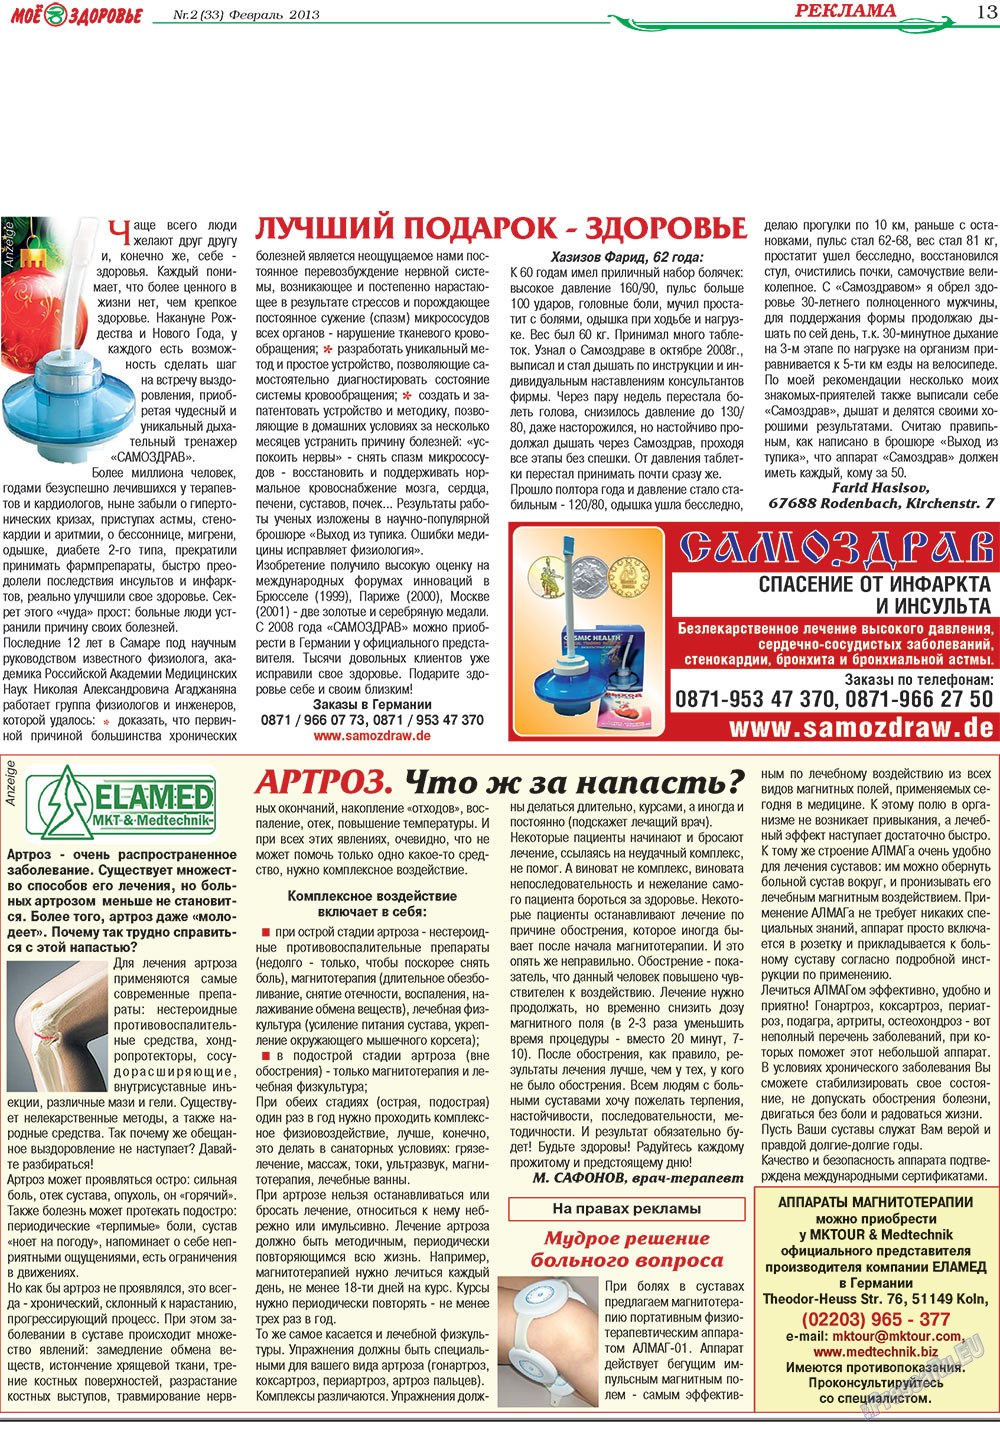 Кругозор, газета. 2013 №2 стр.13